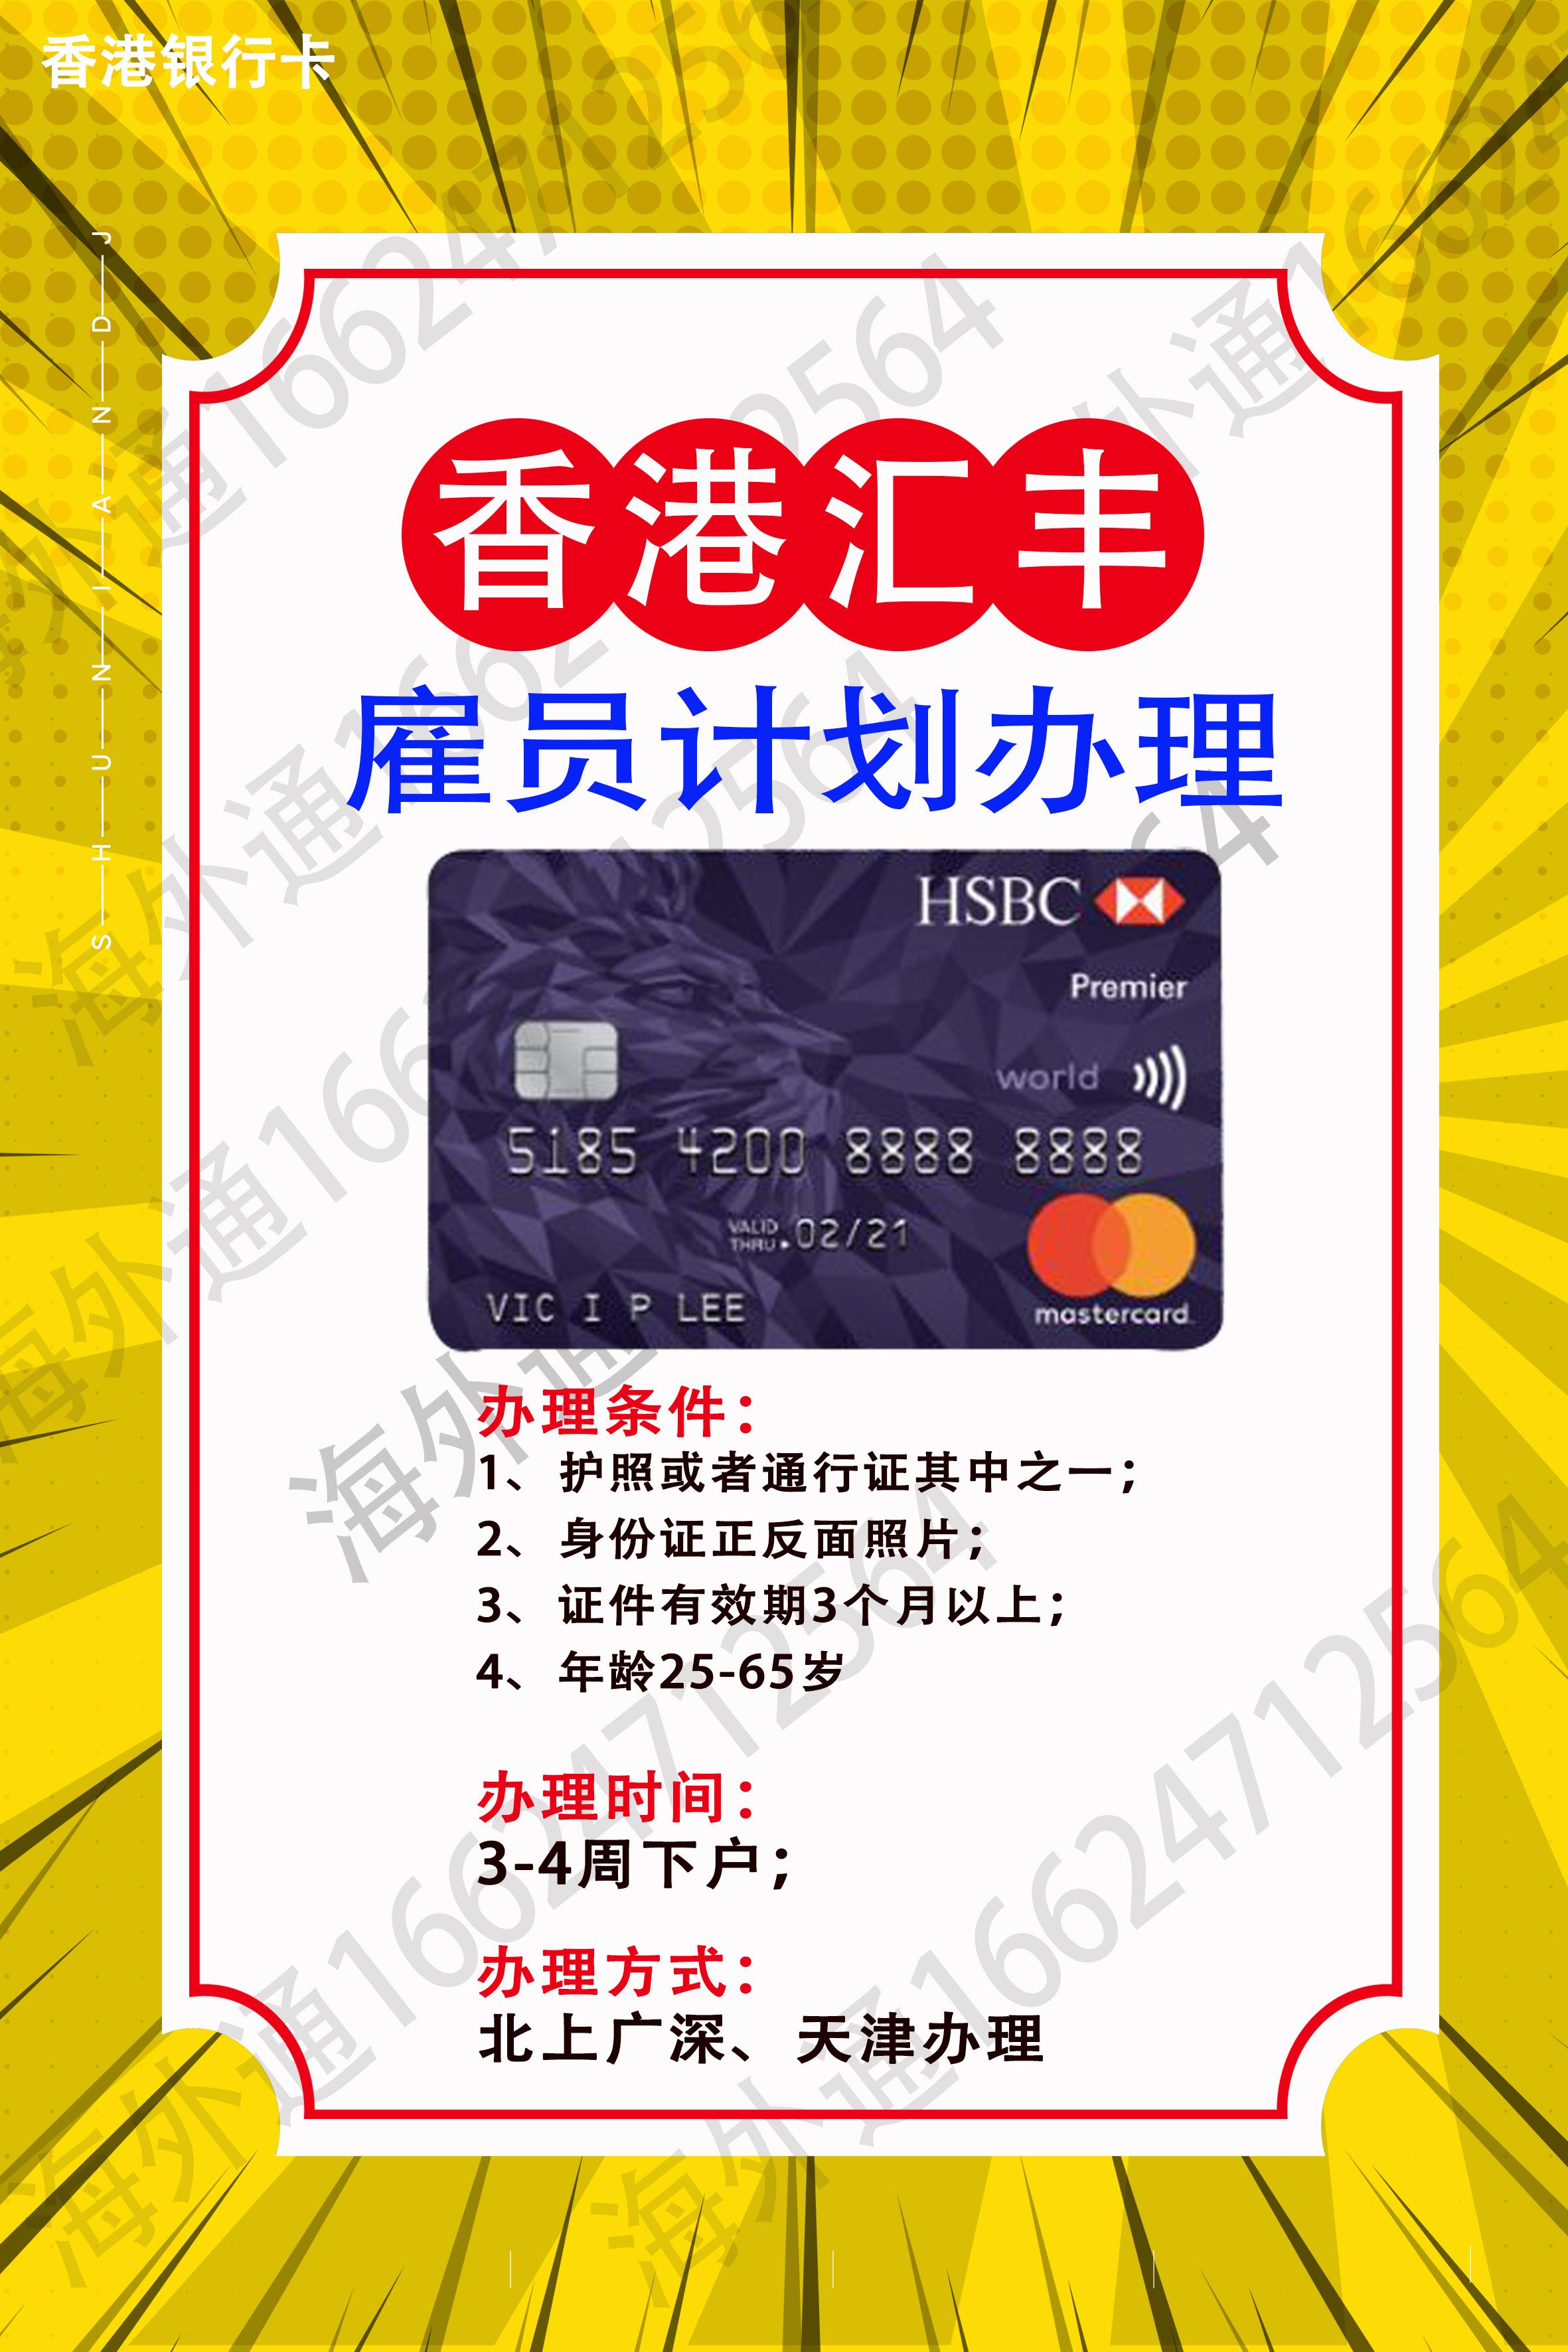 【香港个人卡0门槛开户】香港汇丰银行个人户内地见证全流程 - 哔哩哔哩